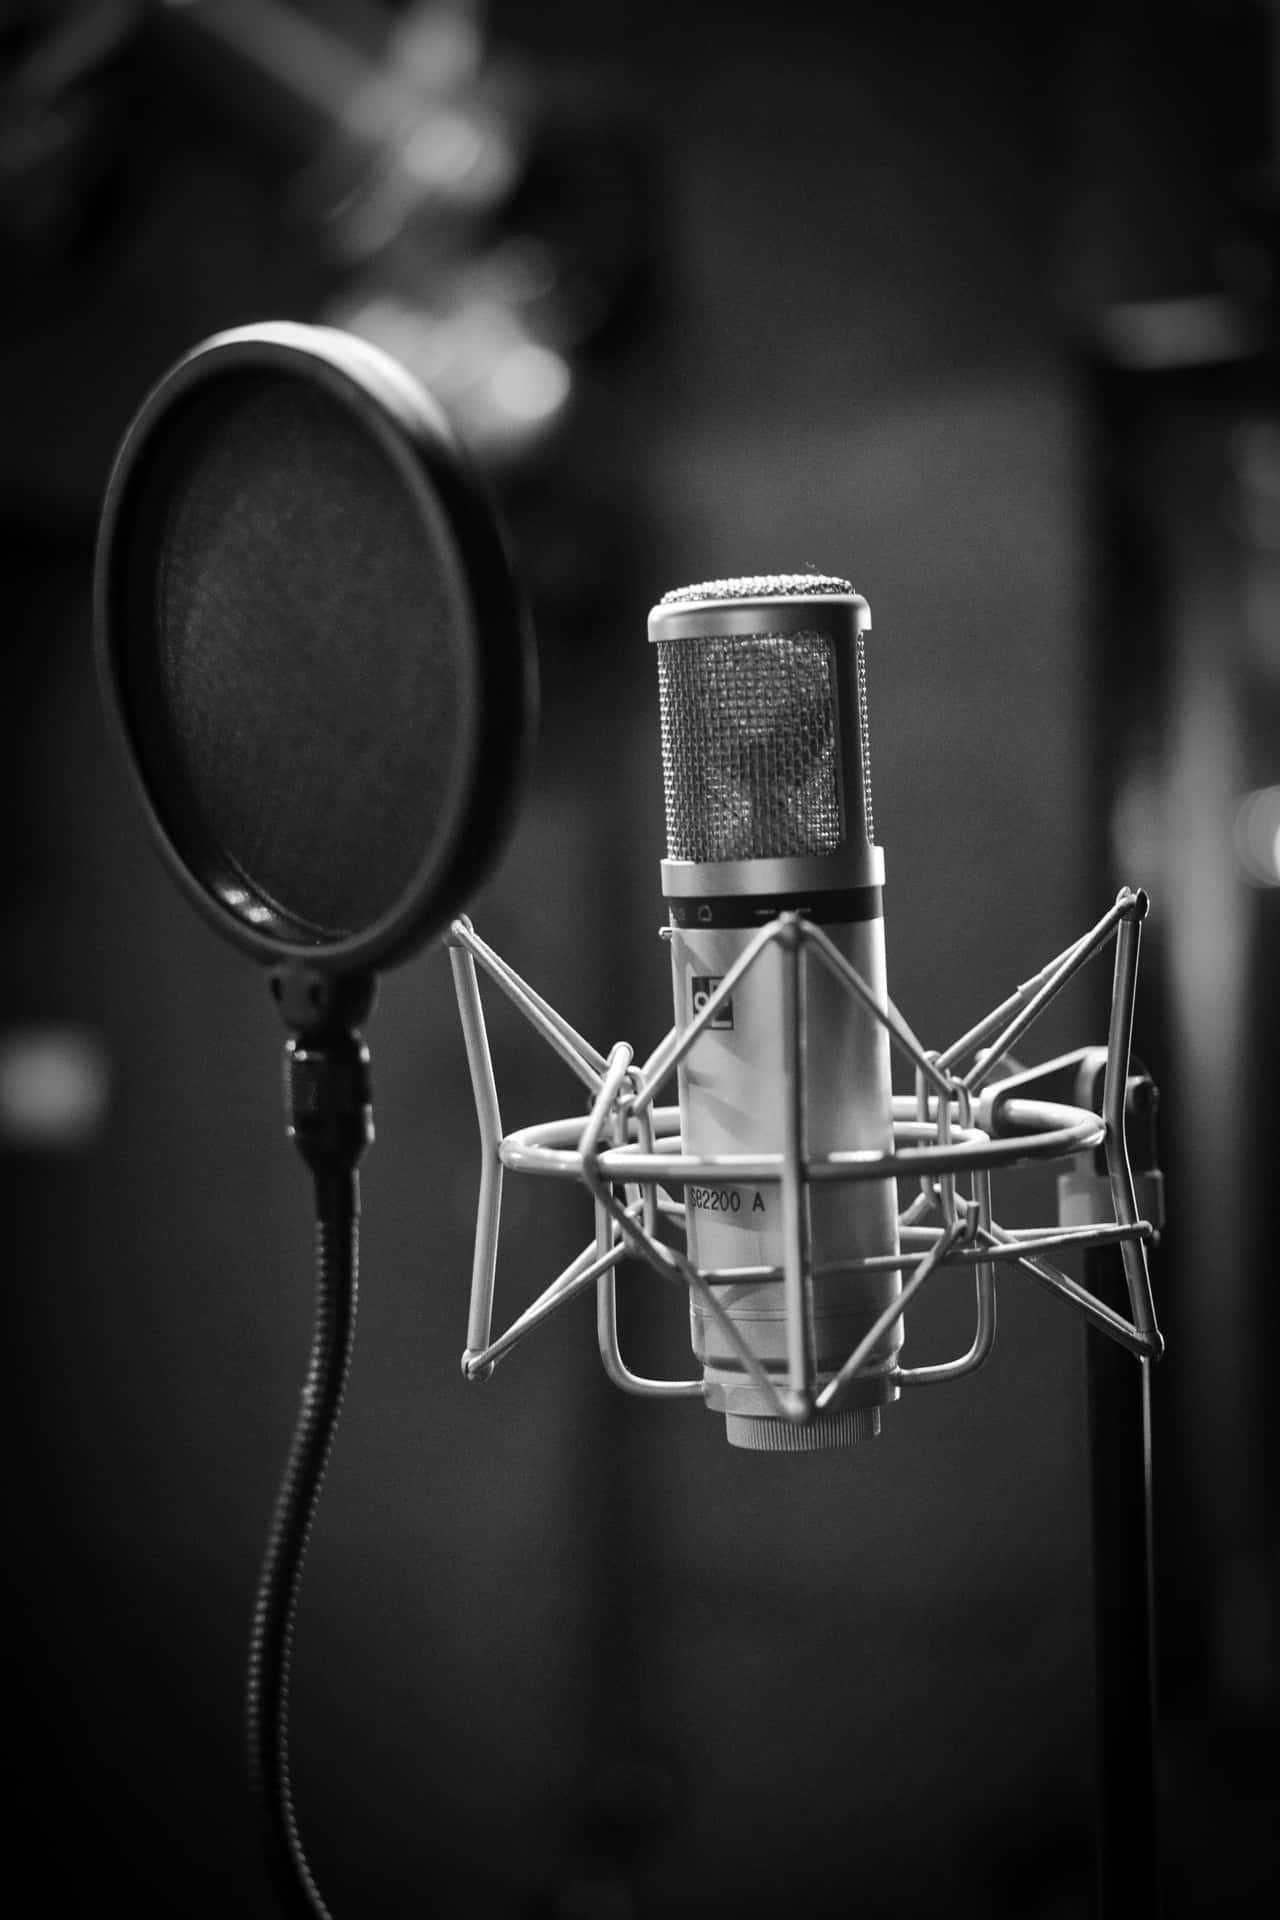 Einmikrofon Befindet Sich In Einem Aufnahmestudio.